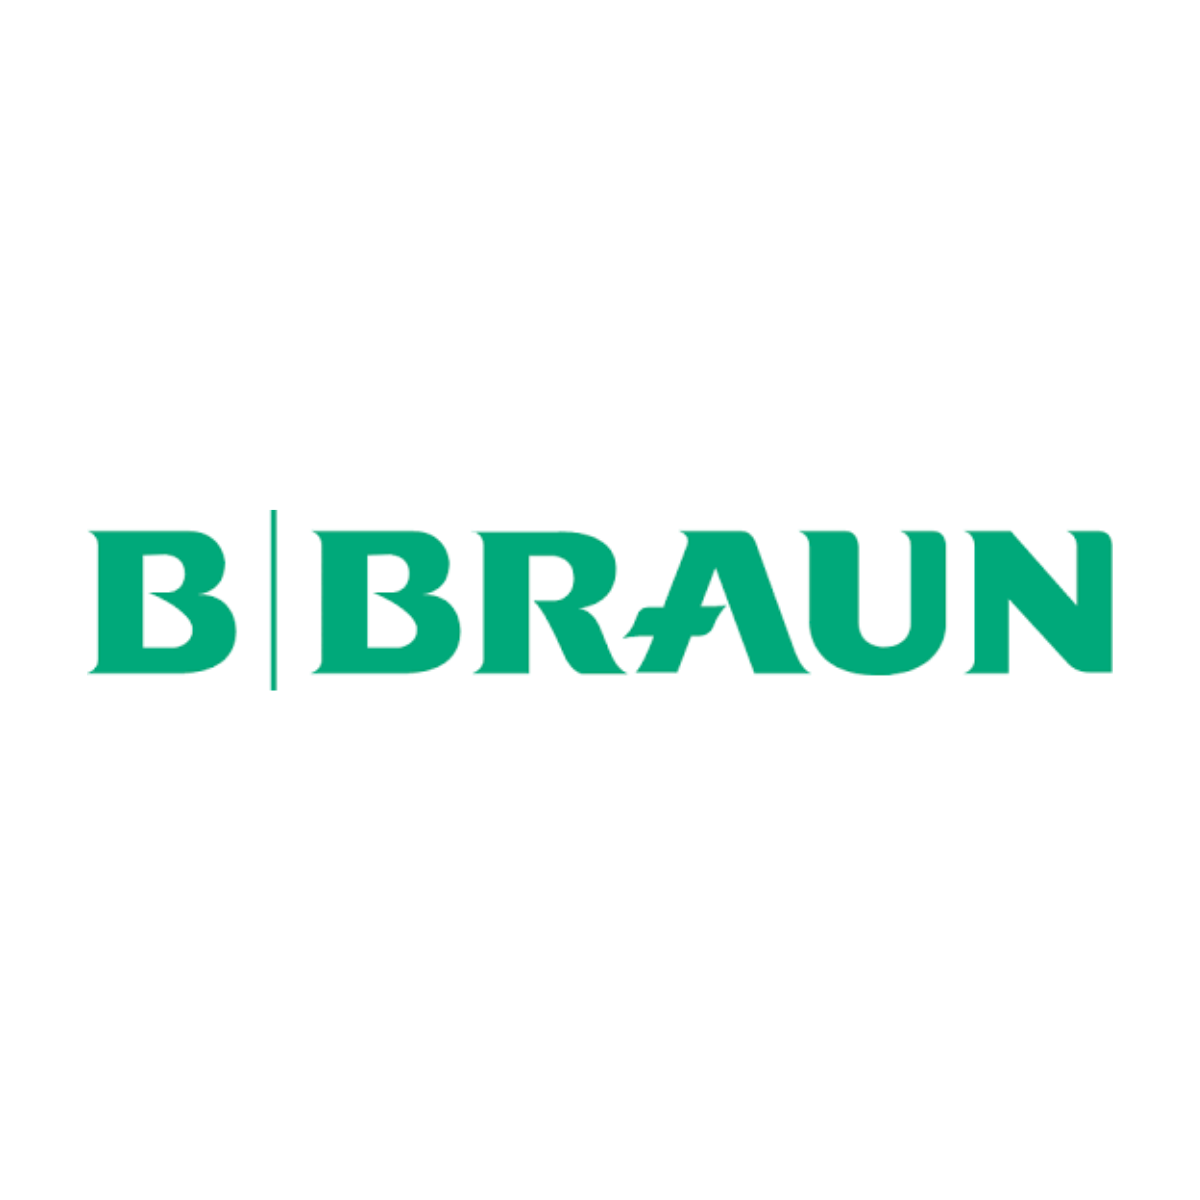 b|braun